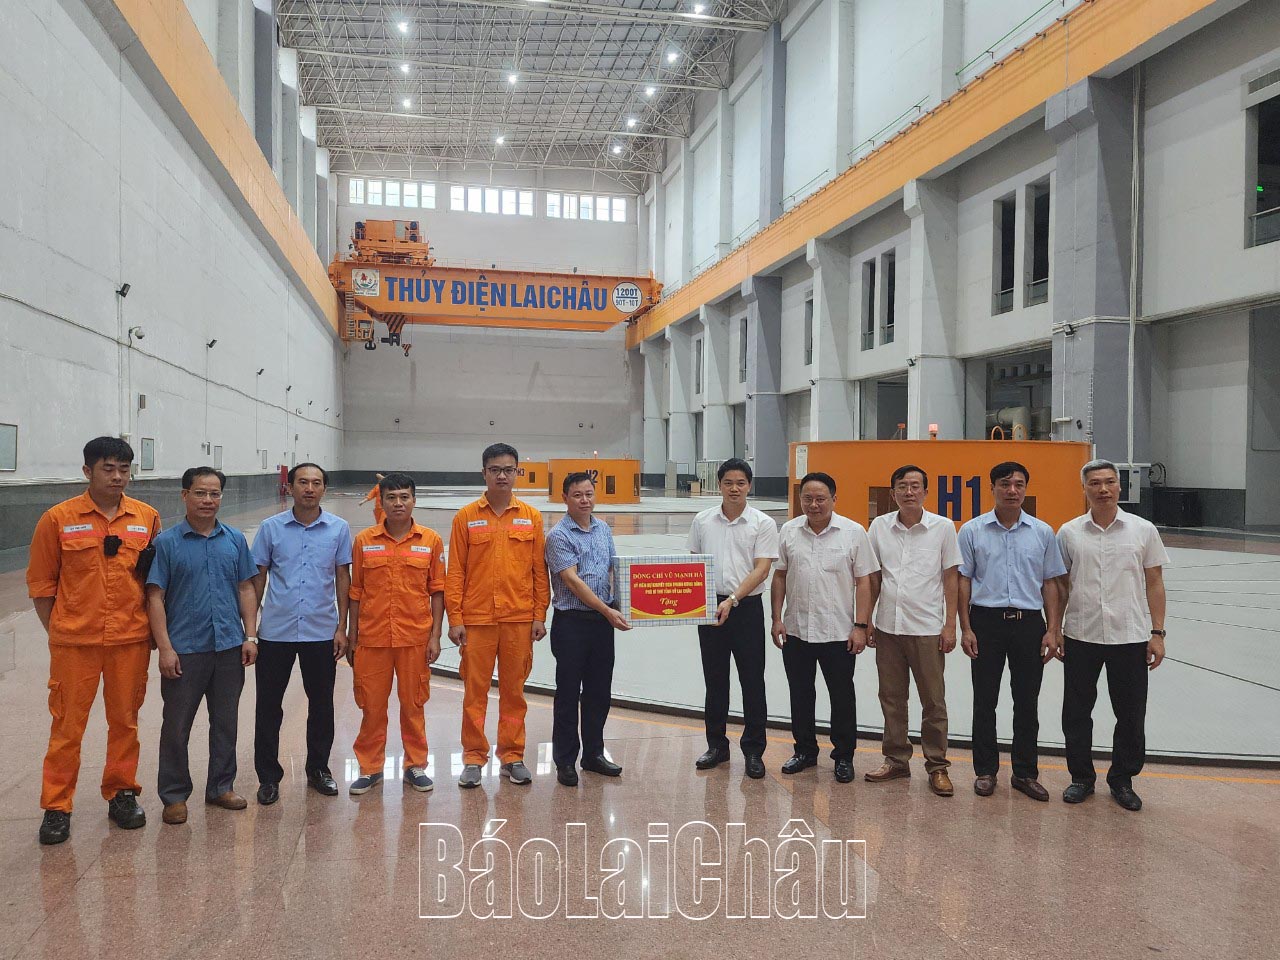 Đồng chí Vũ Mạnh Hà thăm, tặng quà động viên cán bộ, công nhân viên, người lao động tại Nhà máy Thủy điện Lai Châu.